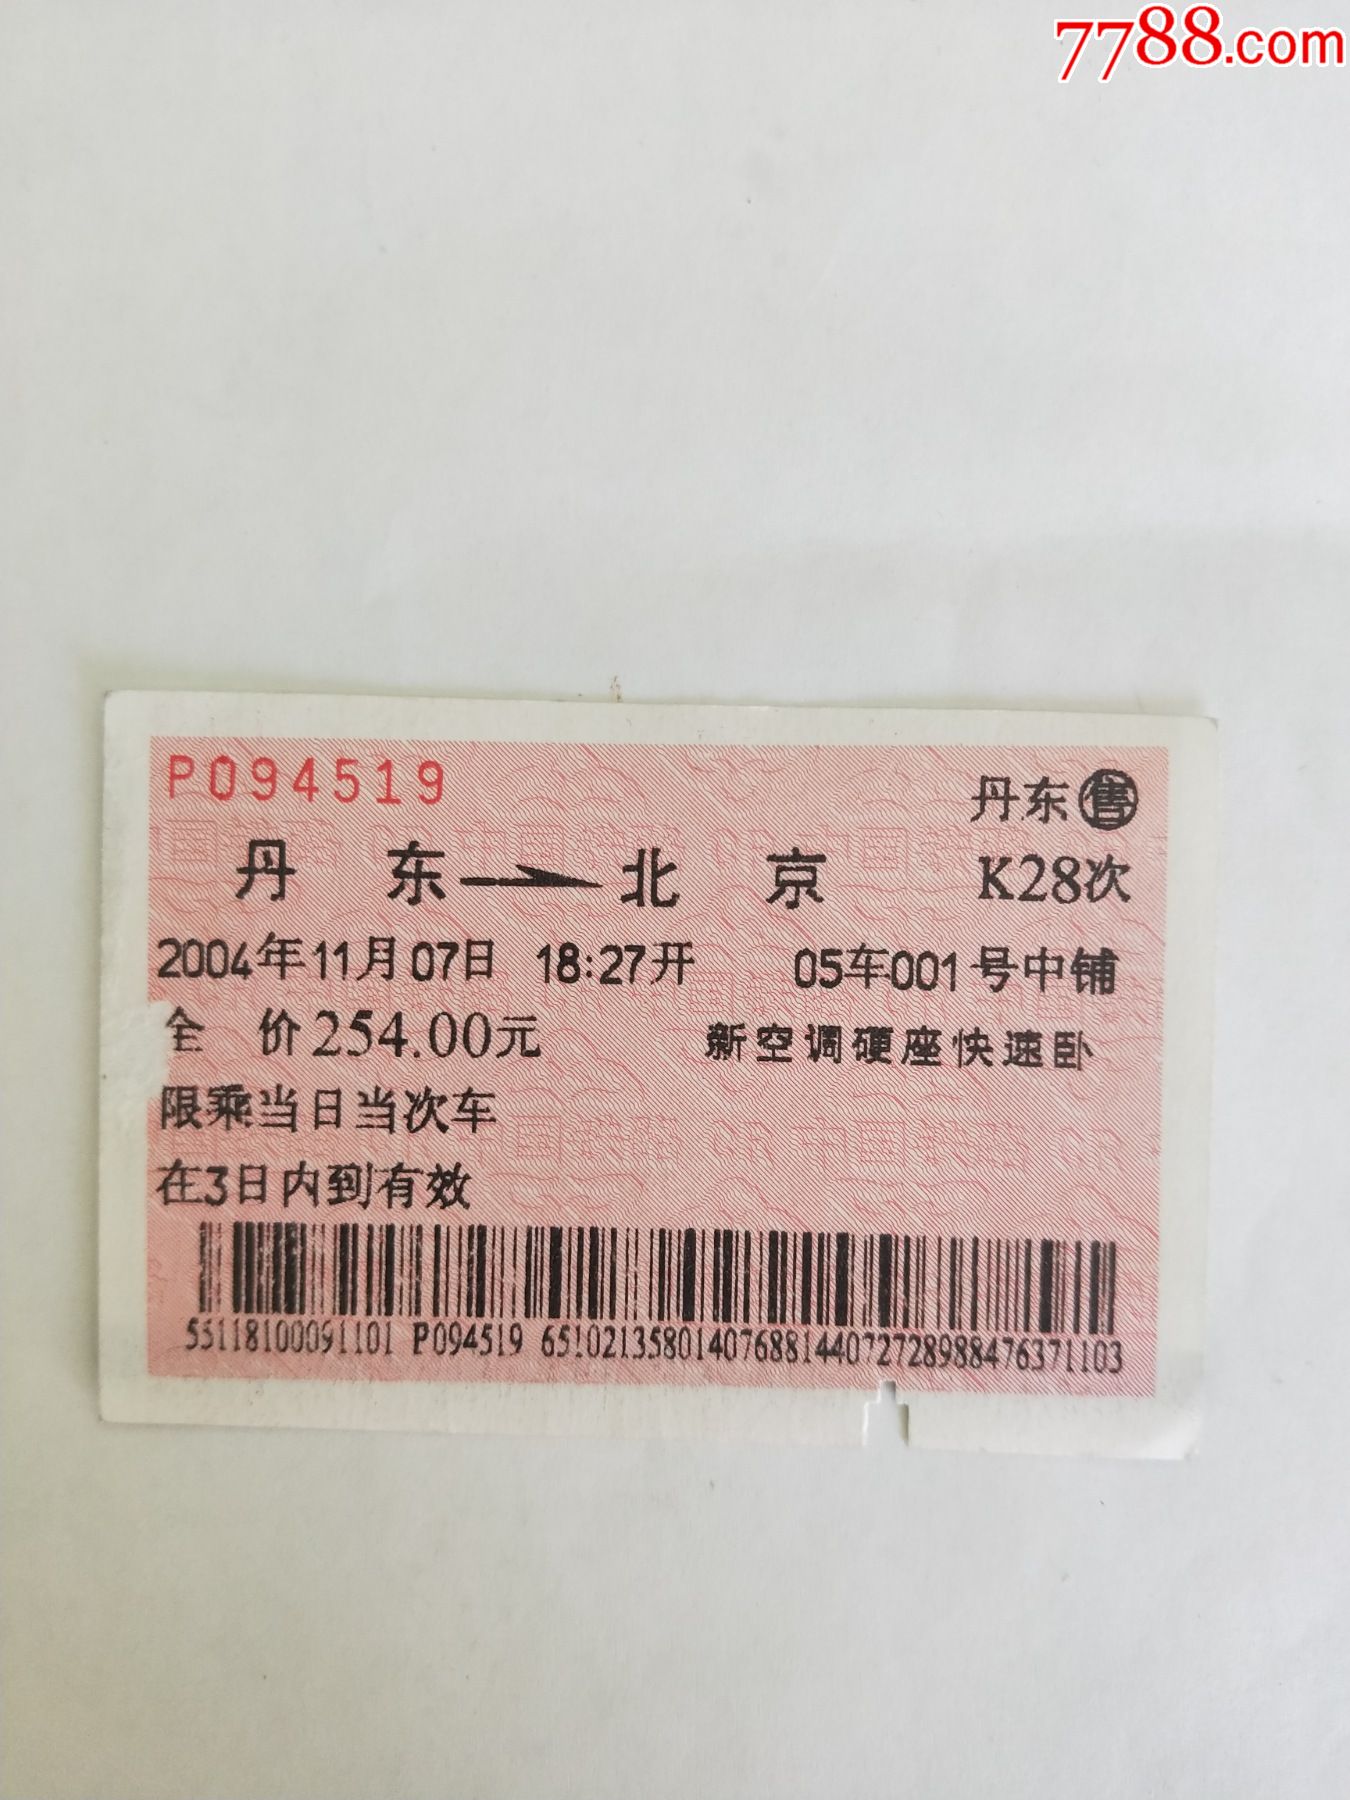 火车时刻表（旅客列车简明时刻表）柳州铁路局；97年4月1日实行；单面图_火车票_收藏交流_交易价值_7788游戏卡收藏